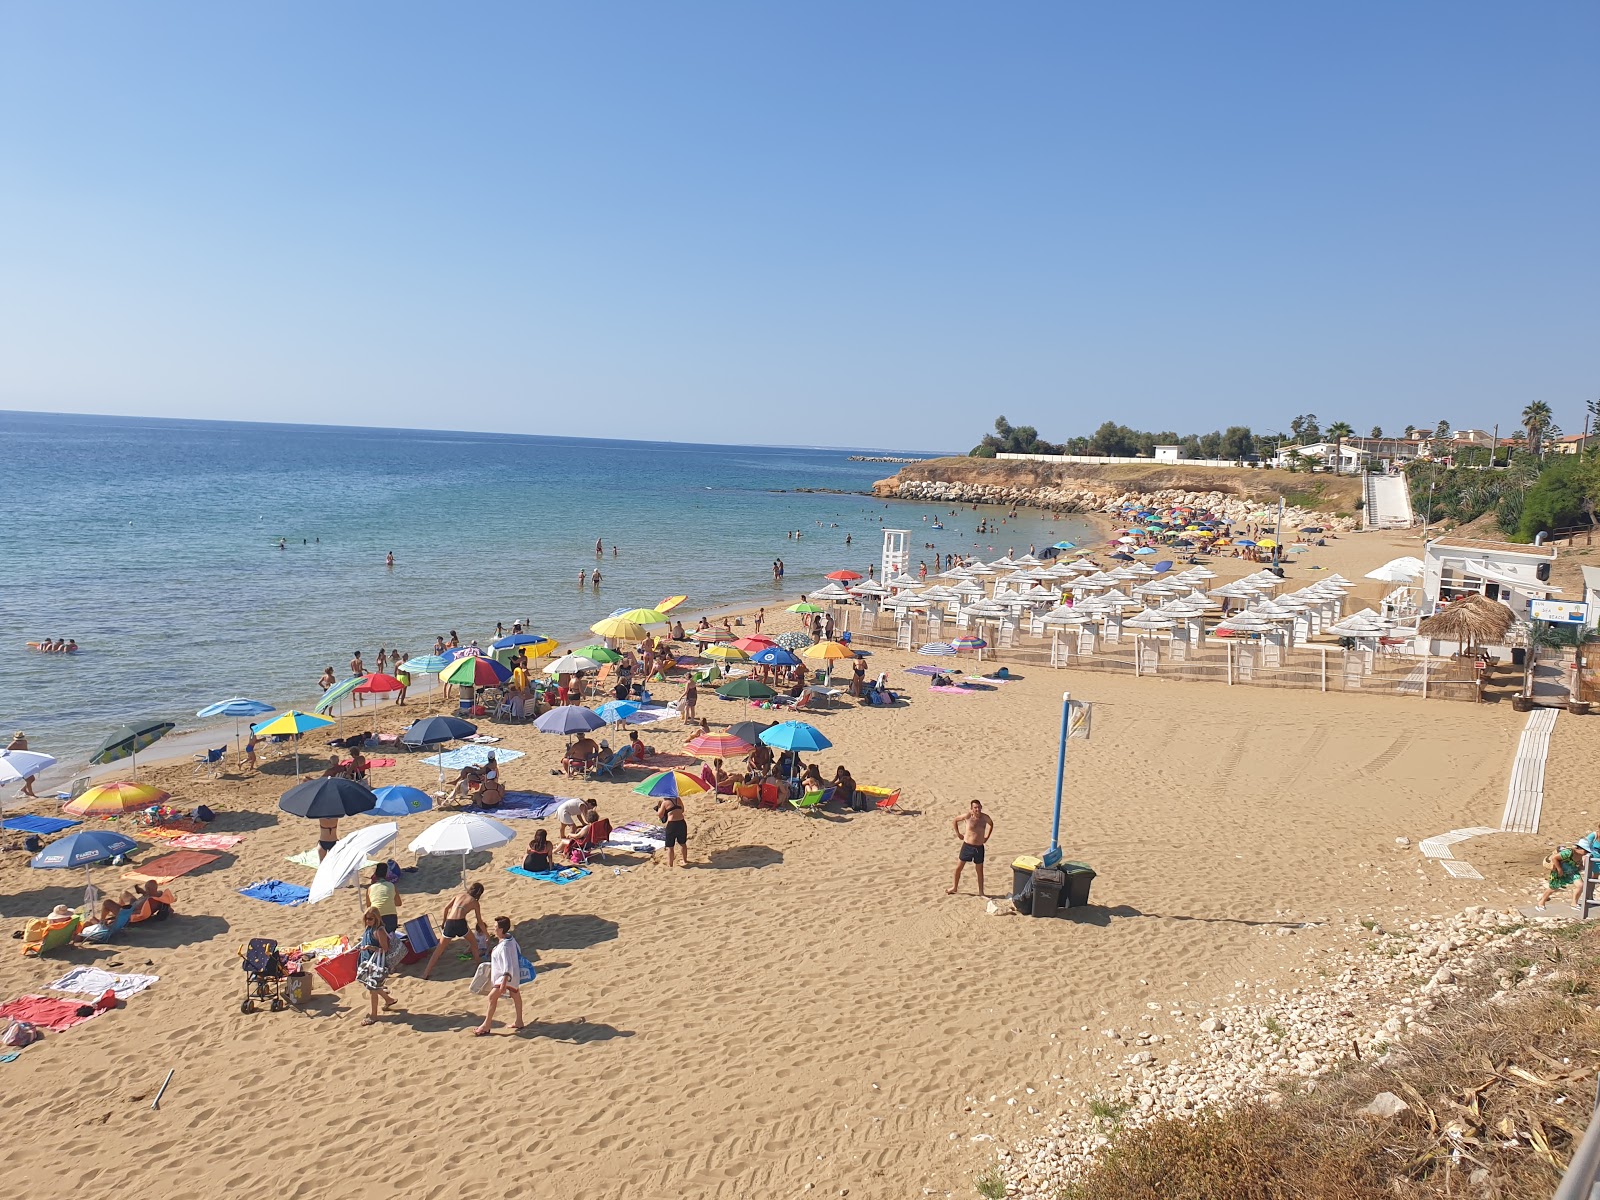 Foto av Spiaggia Pantanello med rak strand